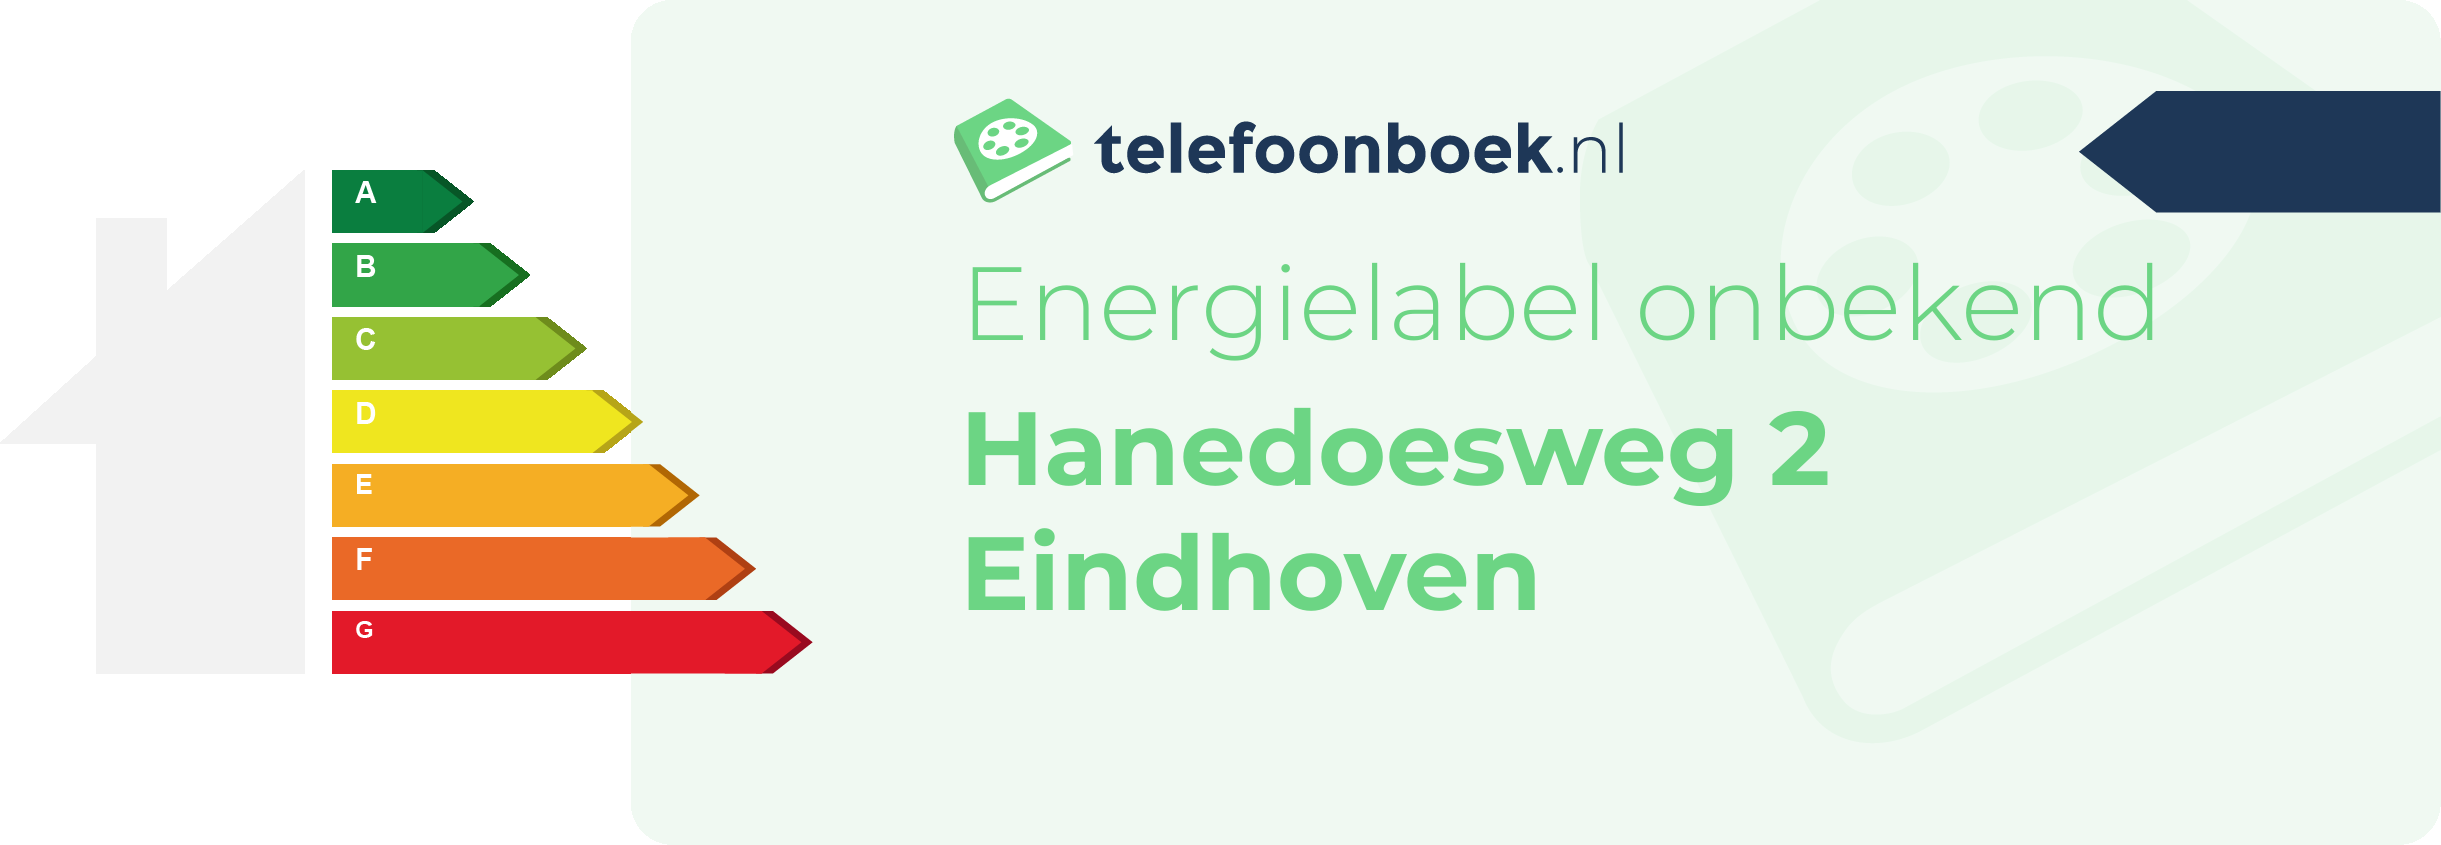 Energielabel Hanedoesweg 2 Eindhoven